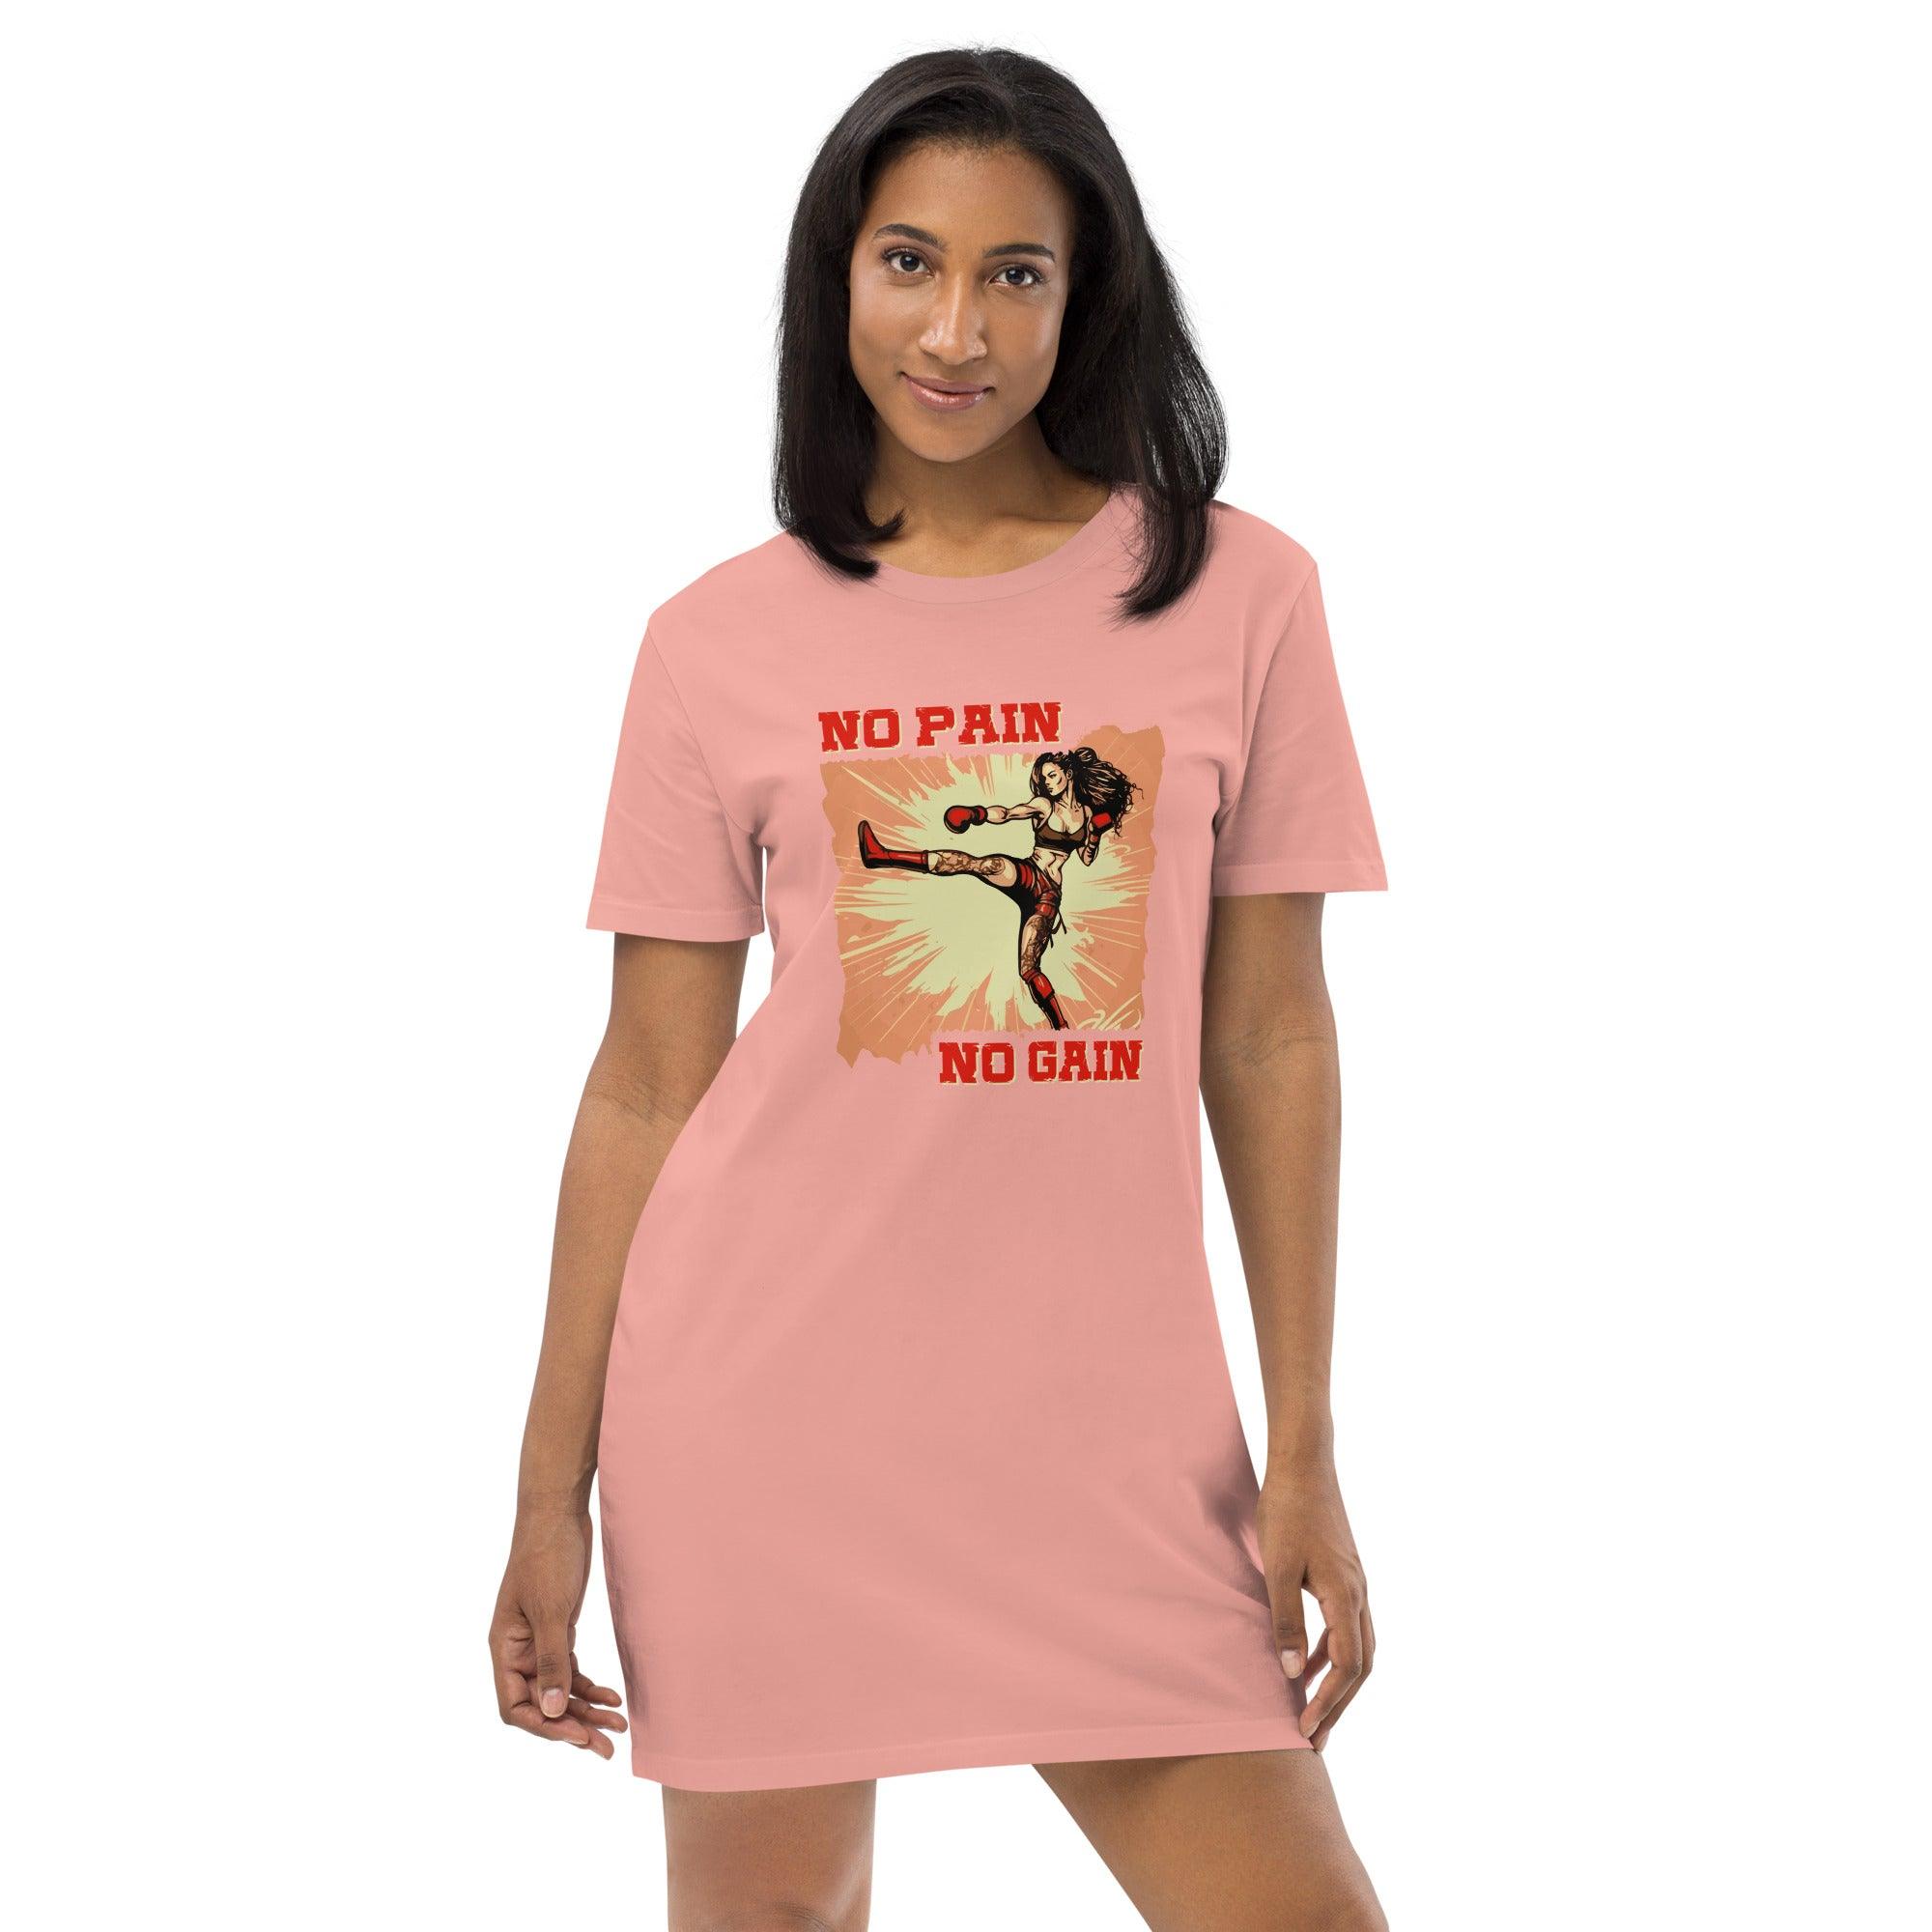 No Pain No Gain Organic Cotton T-Shirt Dress - Beyond T-shirts